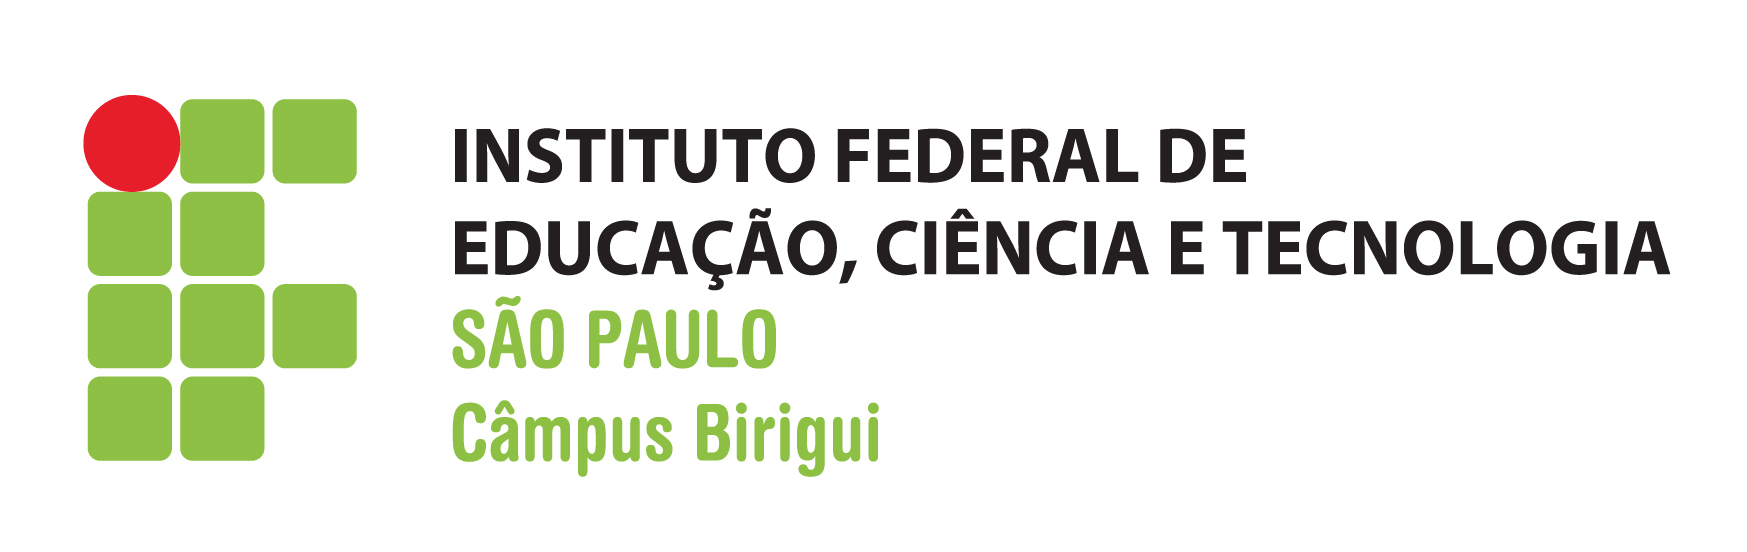 TERMO DE REFERÊNCIA 1. OBJETO 1.1. Contratação de empresa especializada em fornecimento de cópias de chaves para o Campus Birigui do Instituto Federal de Educação, Ciência e Tecnologia de São Paulo IFSP.